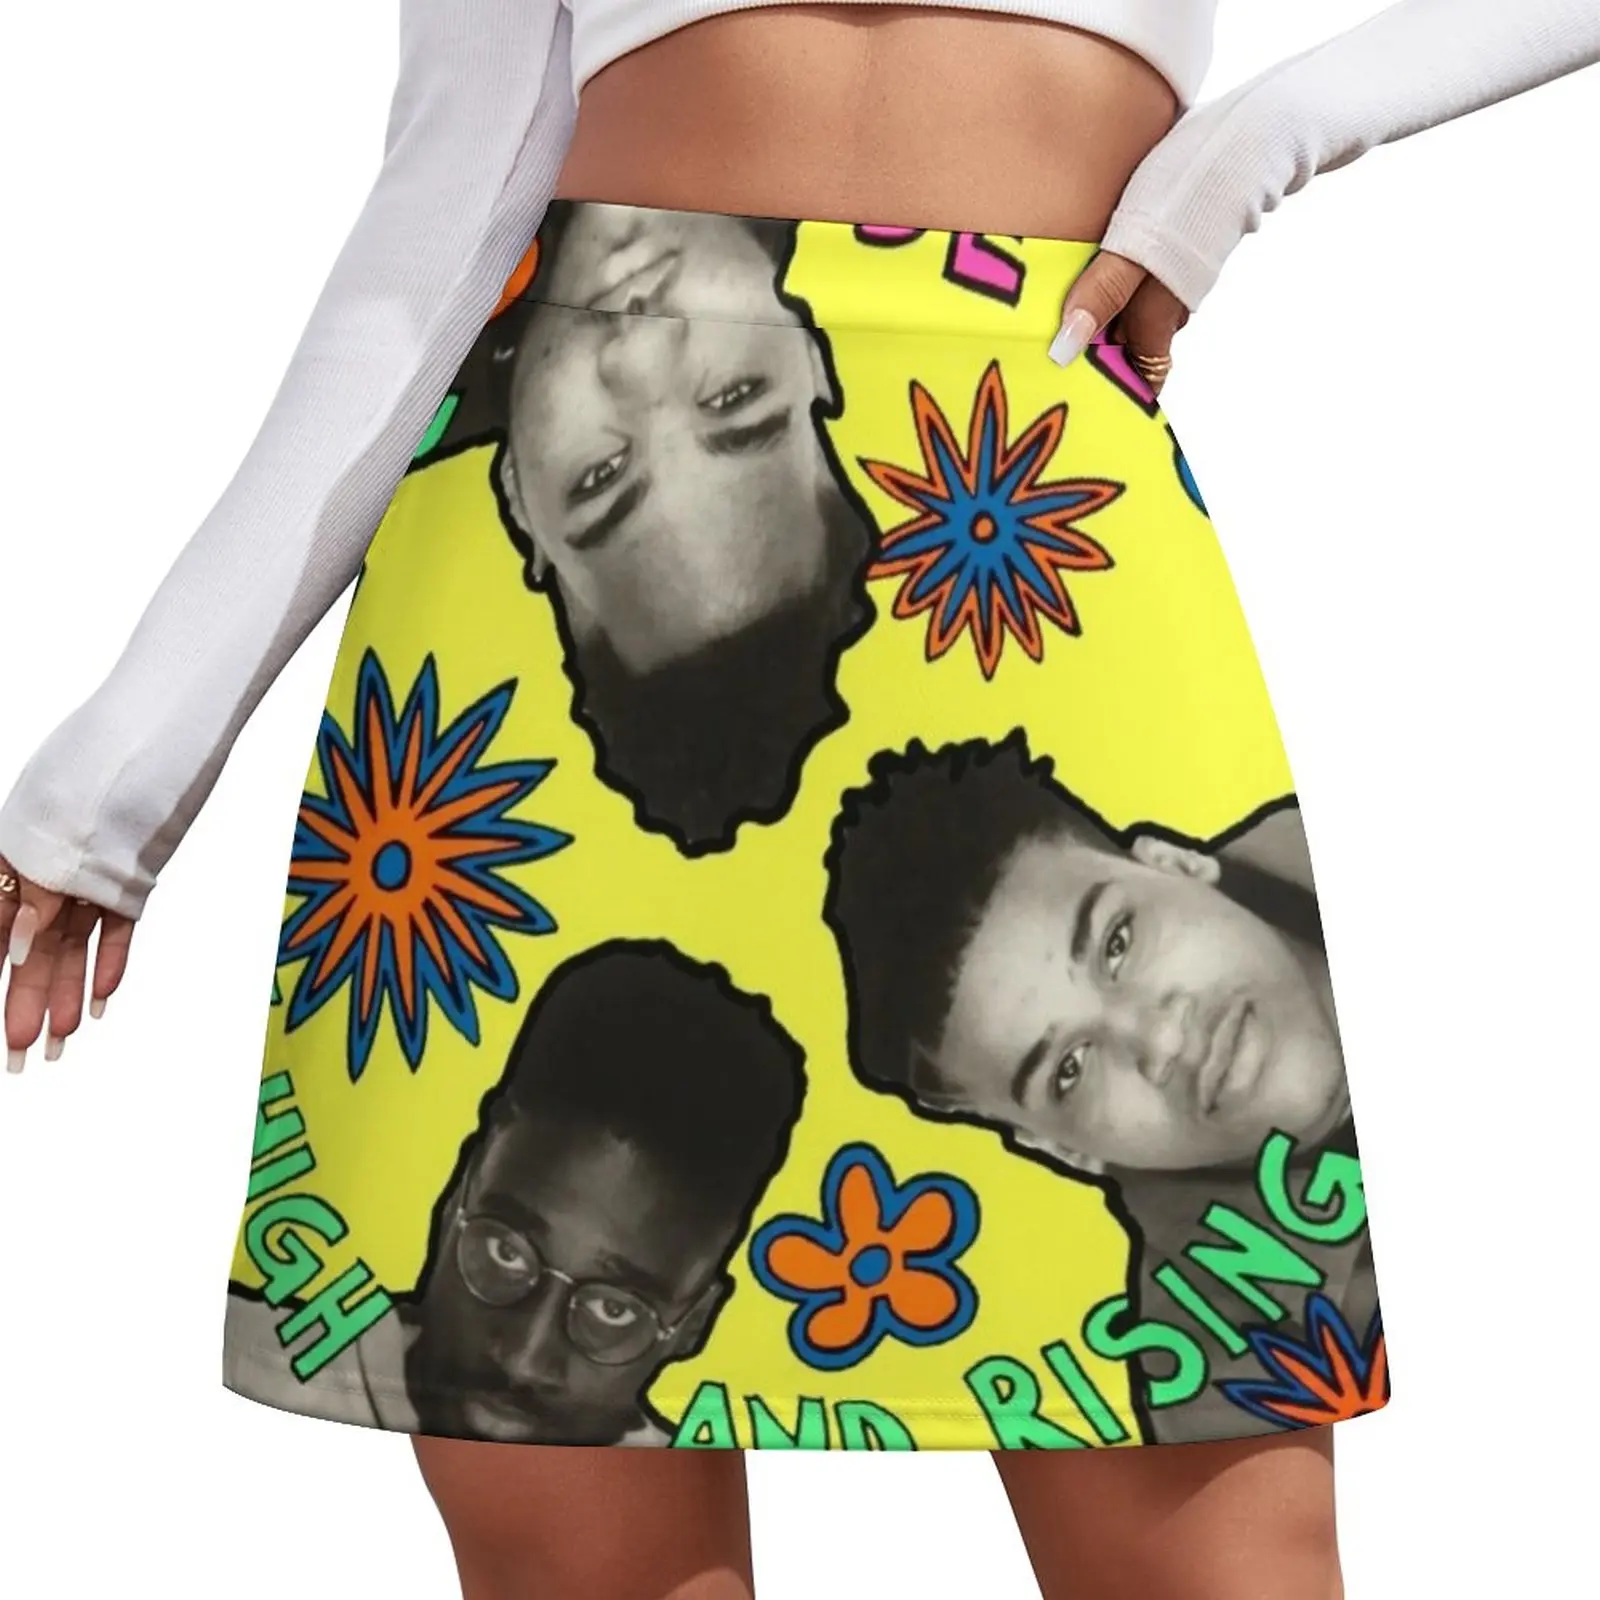 

Женская мини-юбка De La Soul, юбка-штаны, короткая юбка для косплея